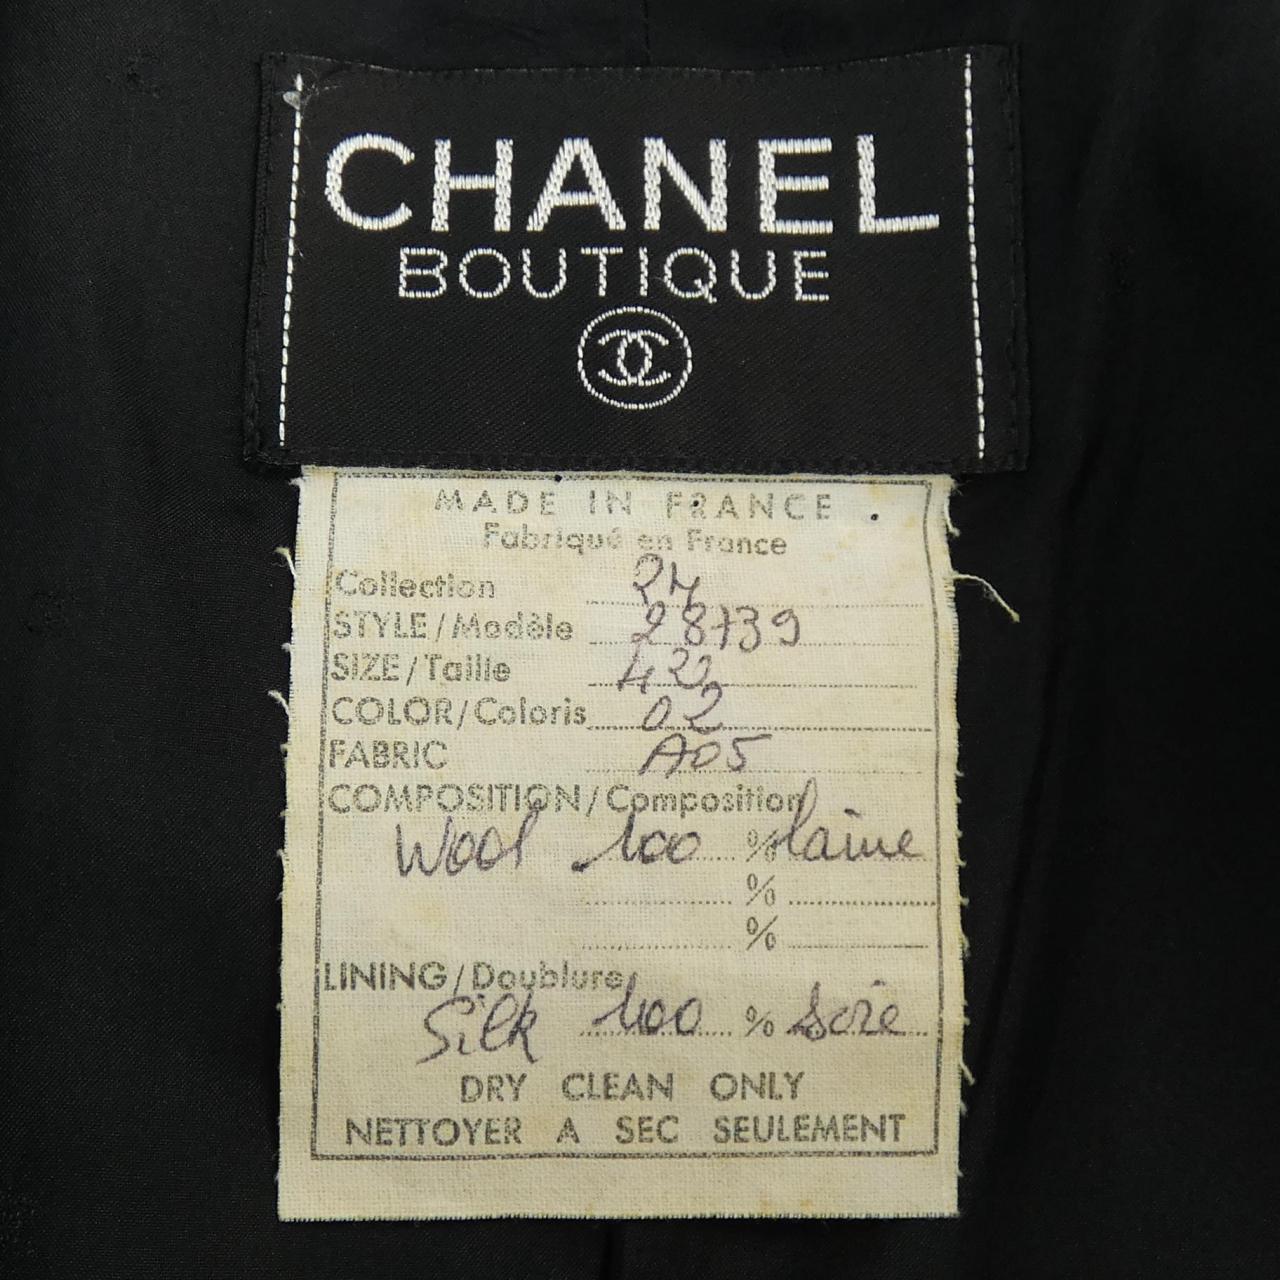 [vintage] CHANEL jacket